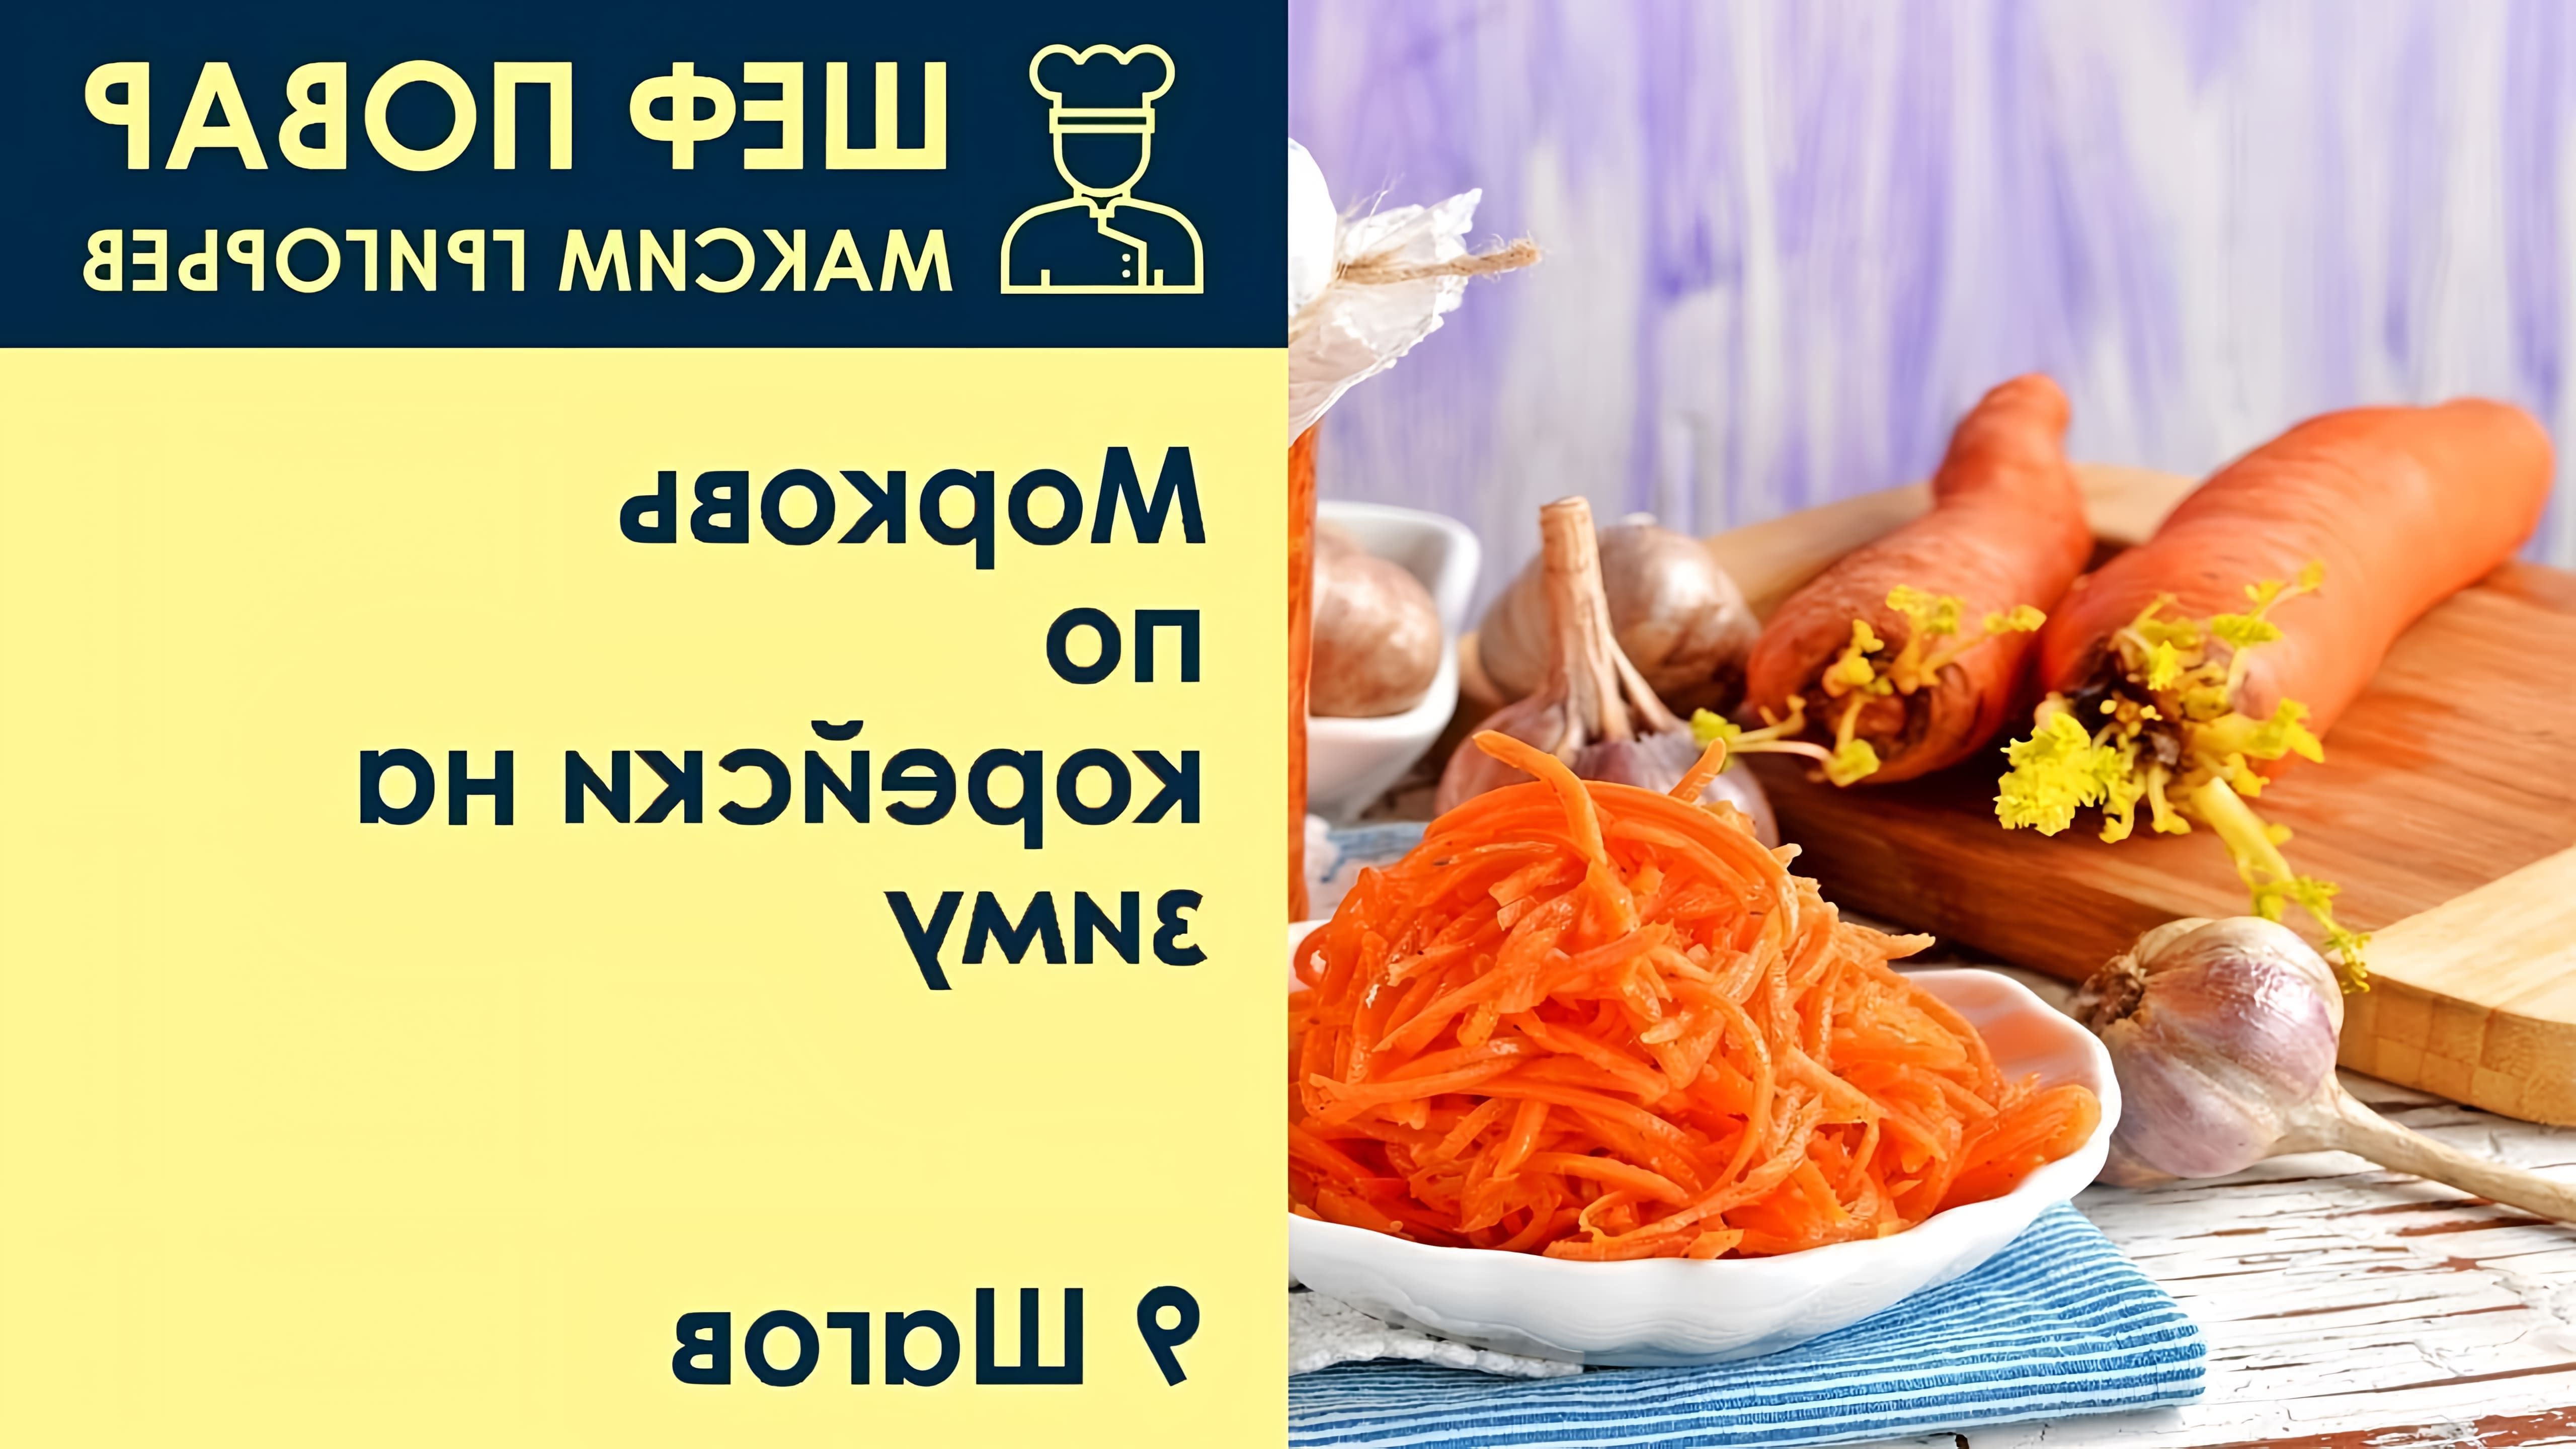 В данном видео шеф-повар Максим Григорьев демонстрирует рецепт приготовления моркови по-корейски на зиму